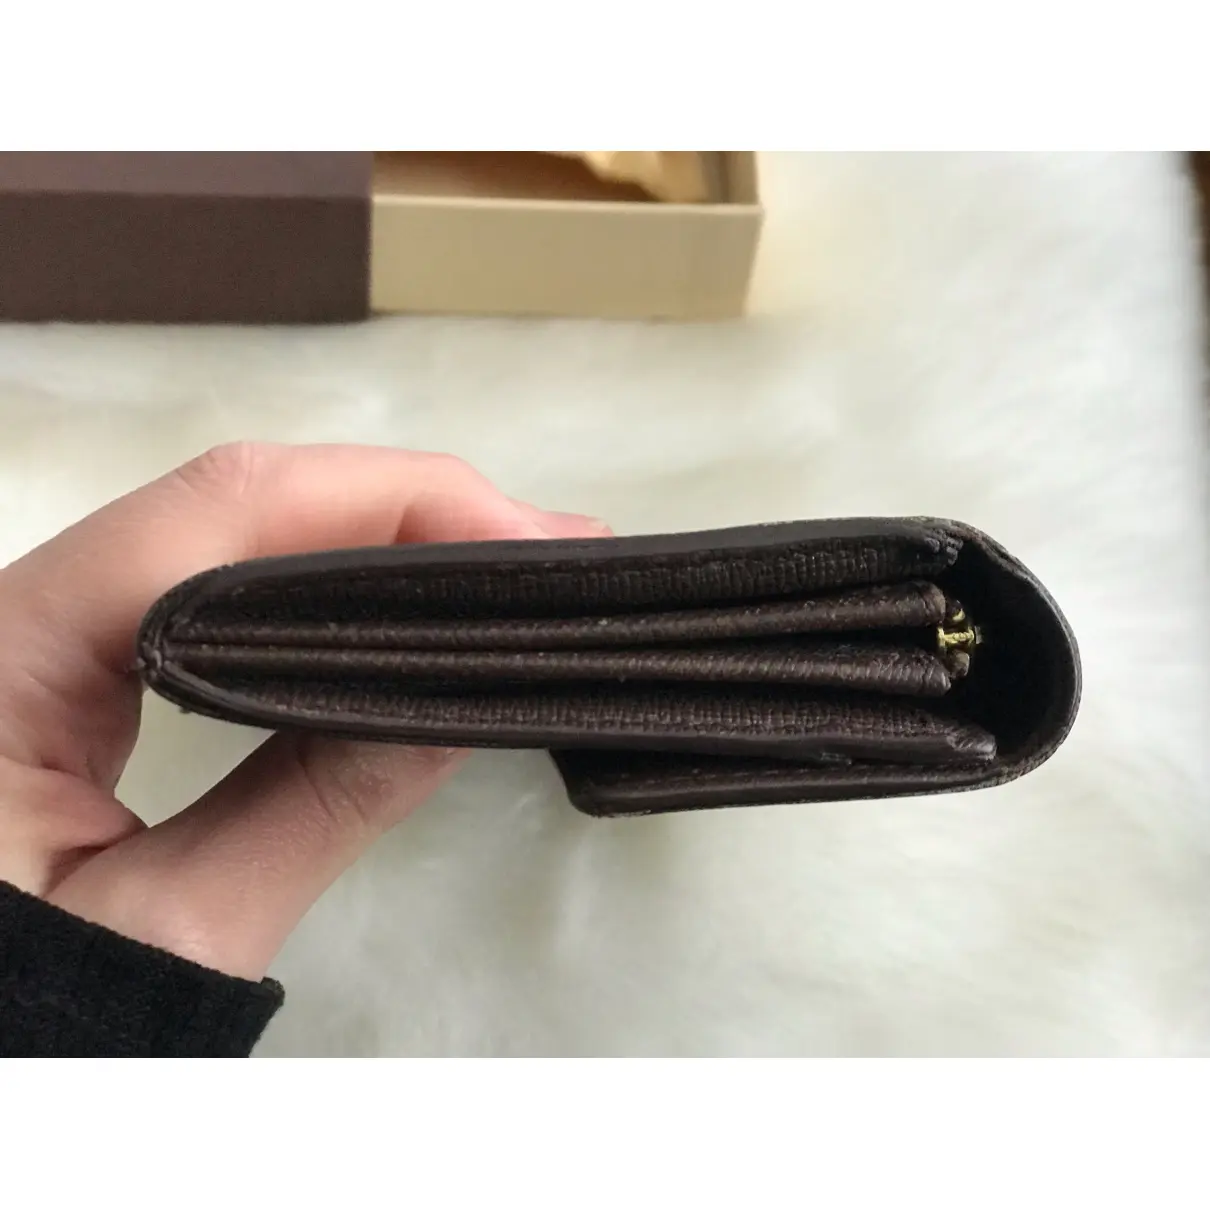 Sarah leather wallet Louis Vuitton